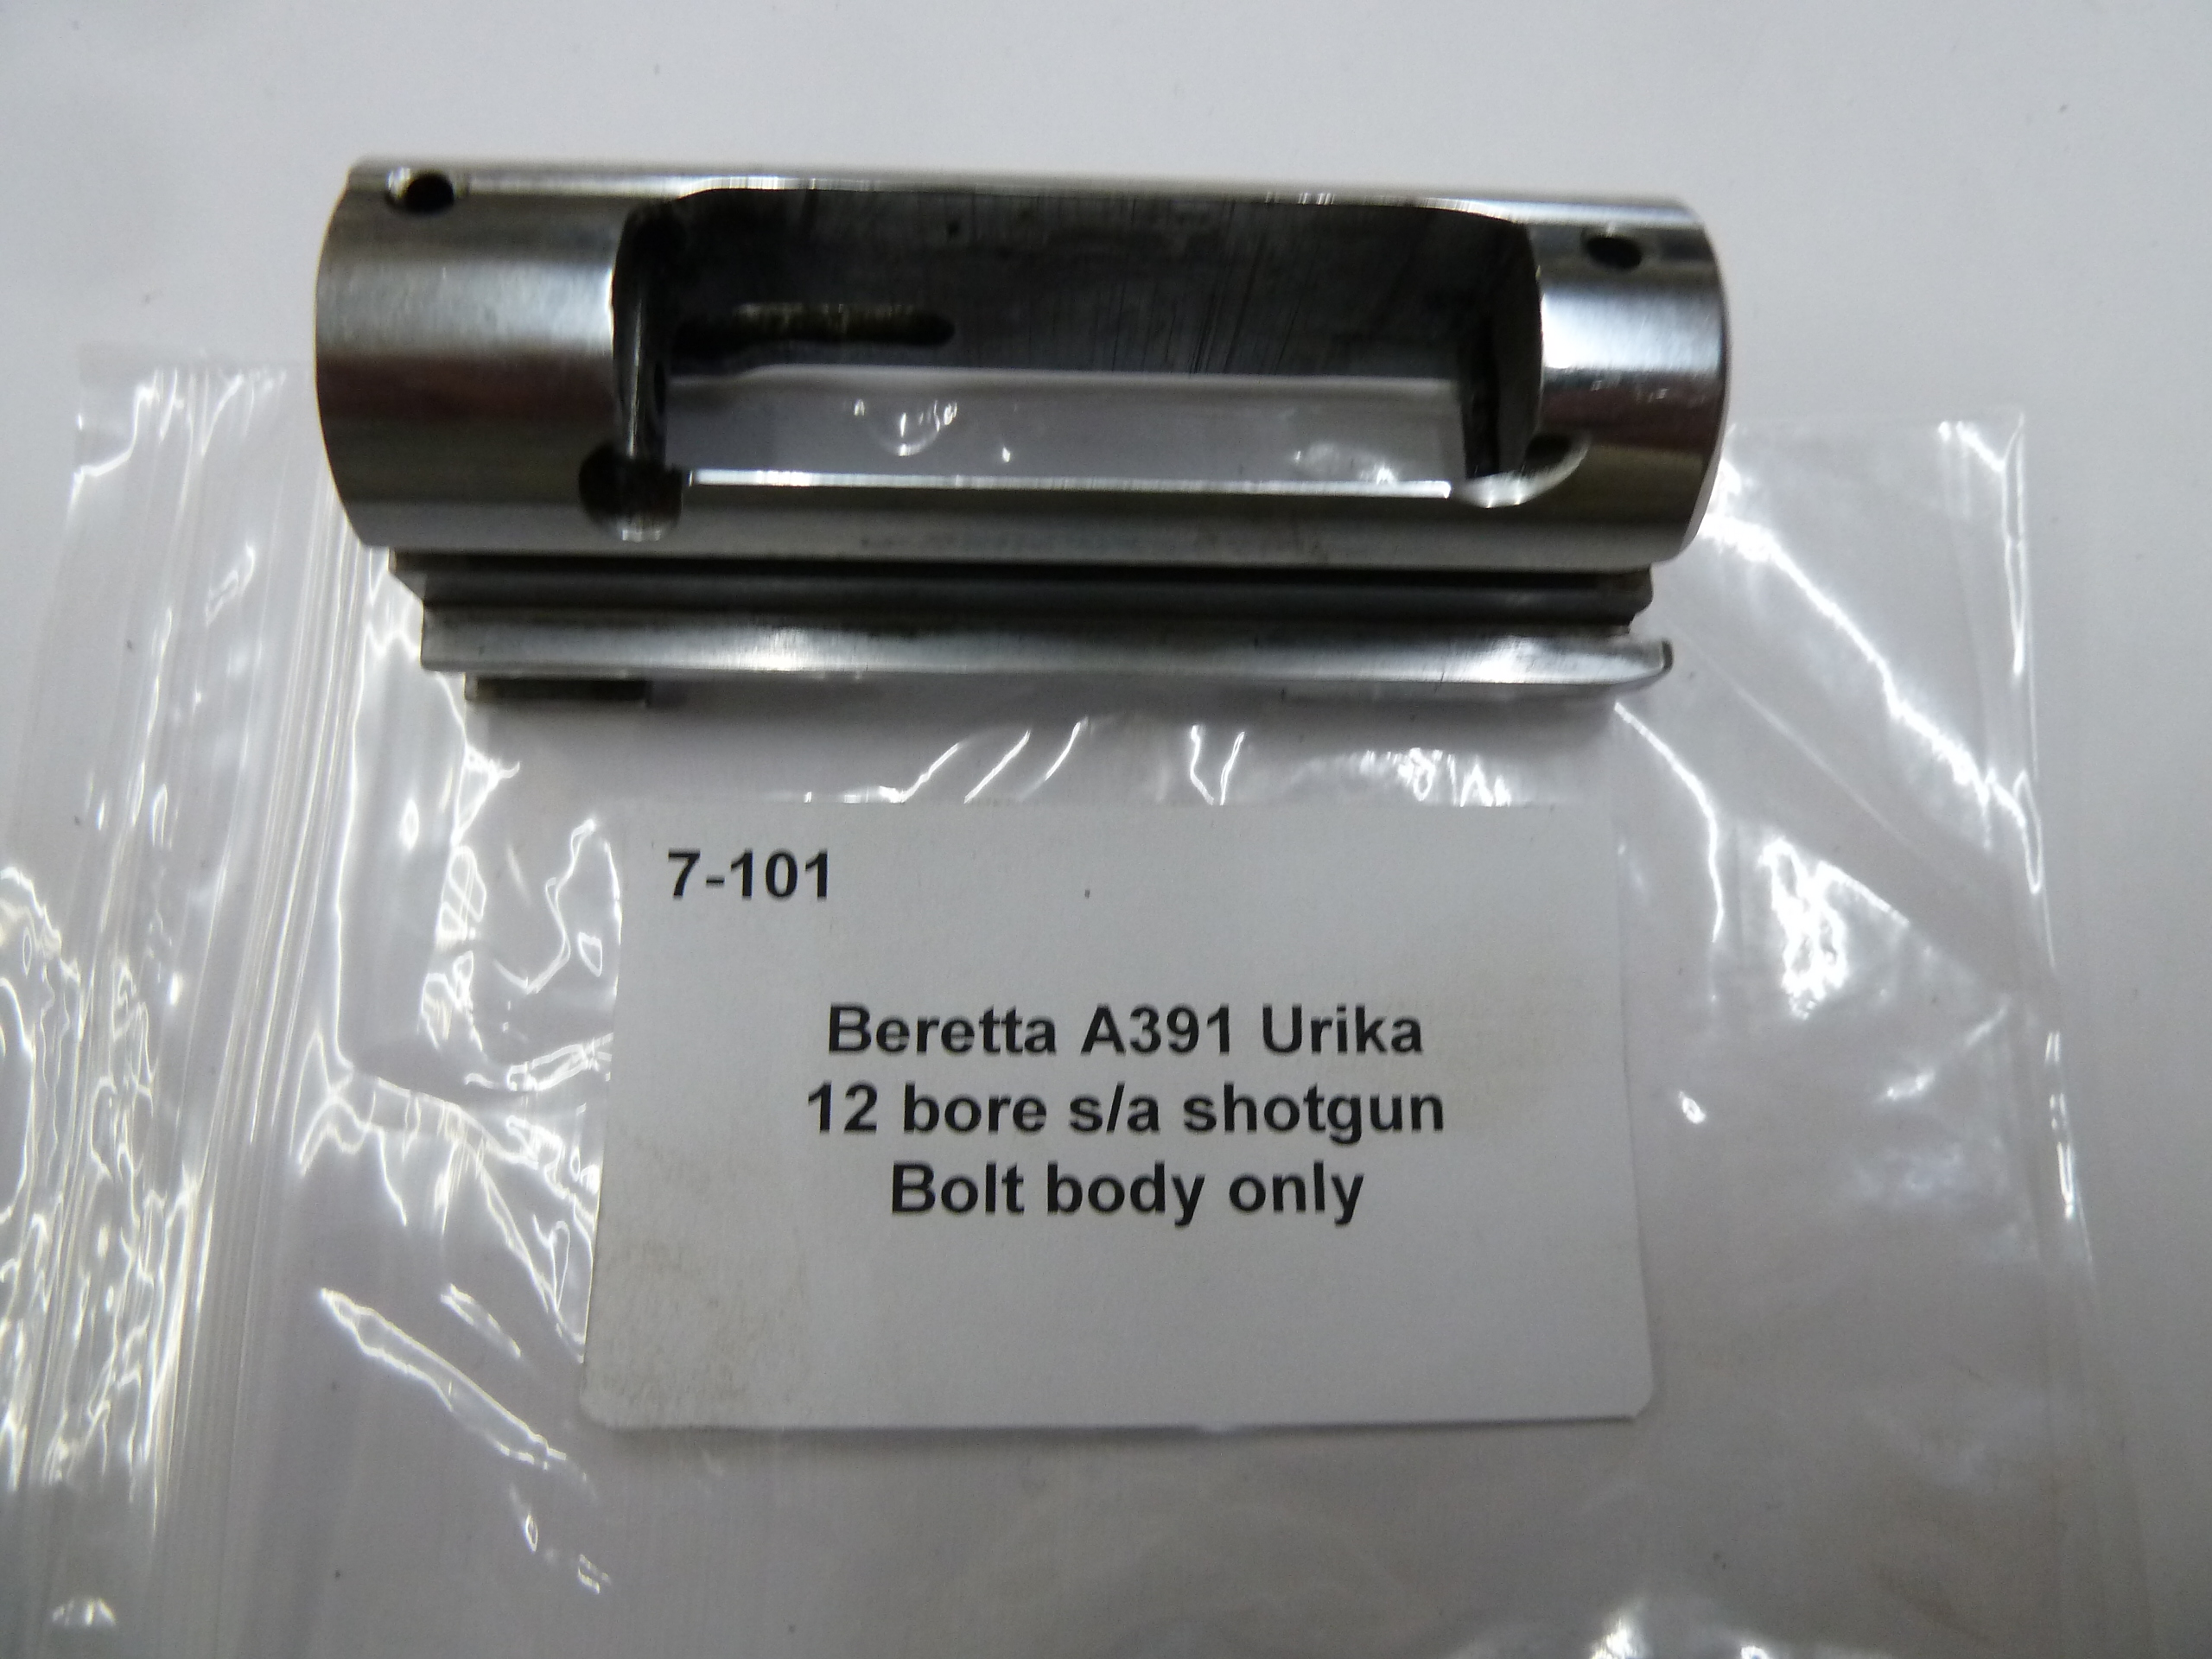 Beretta A391 Urika bolt body only